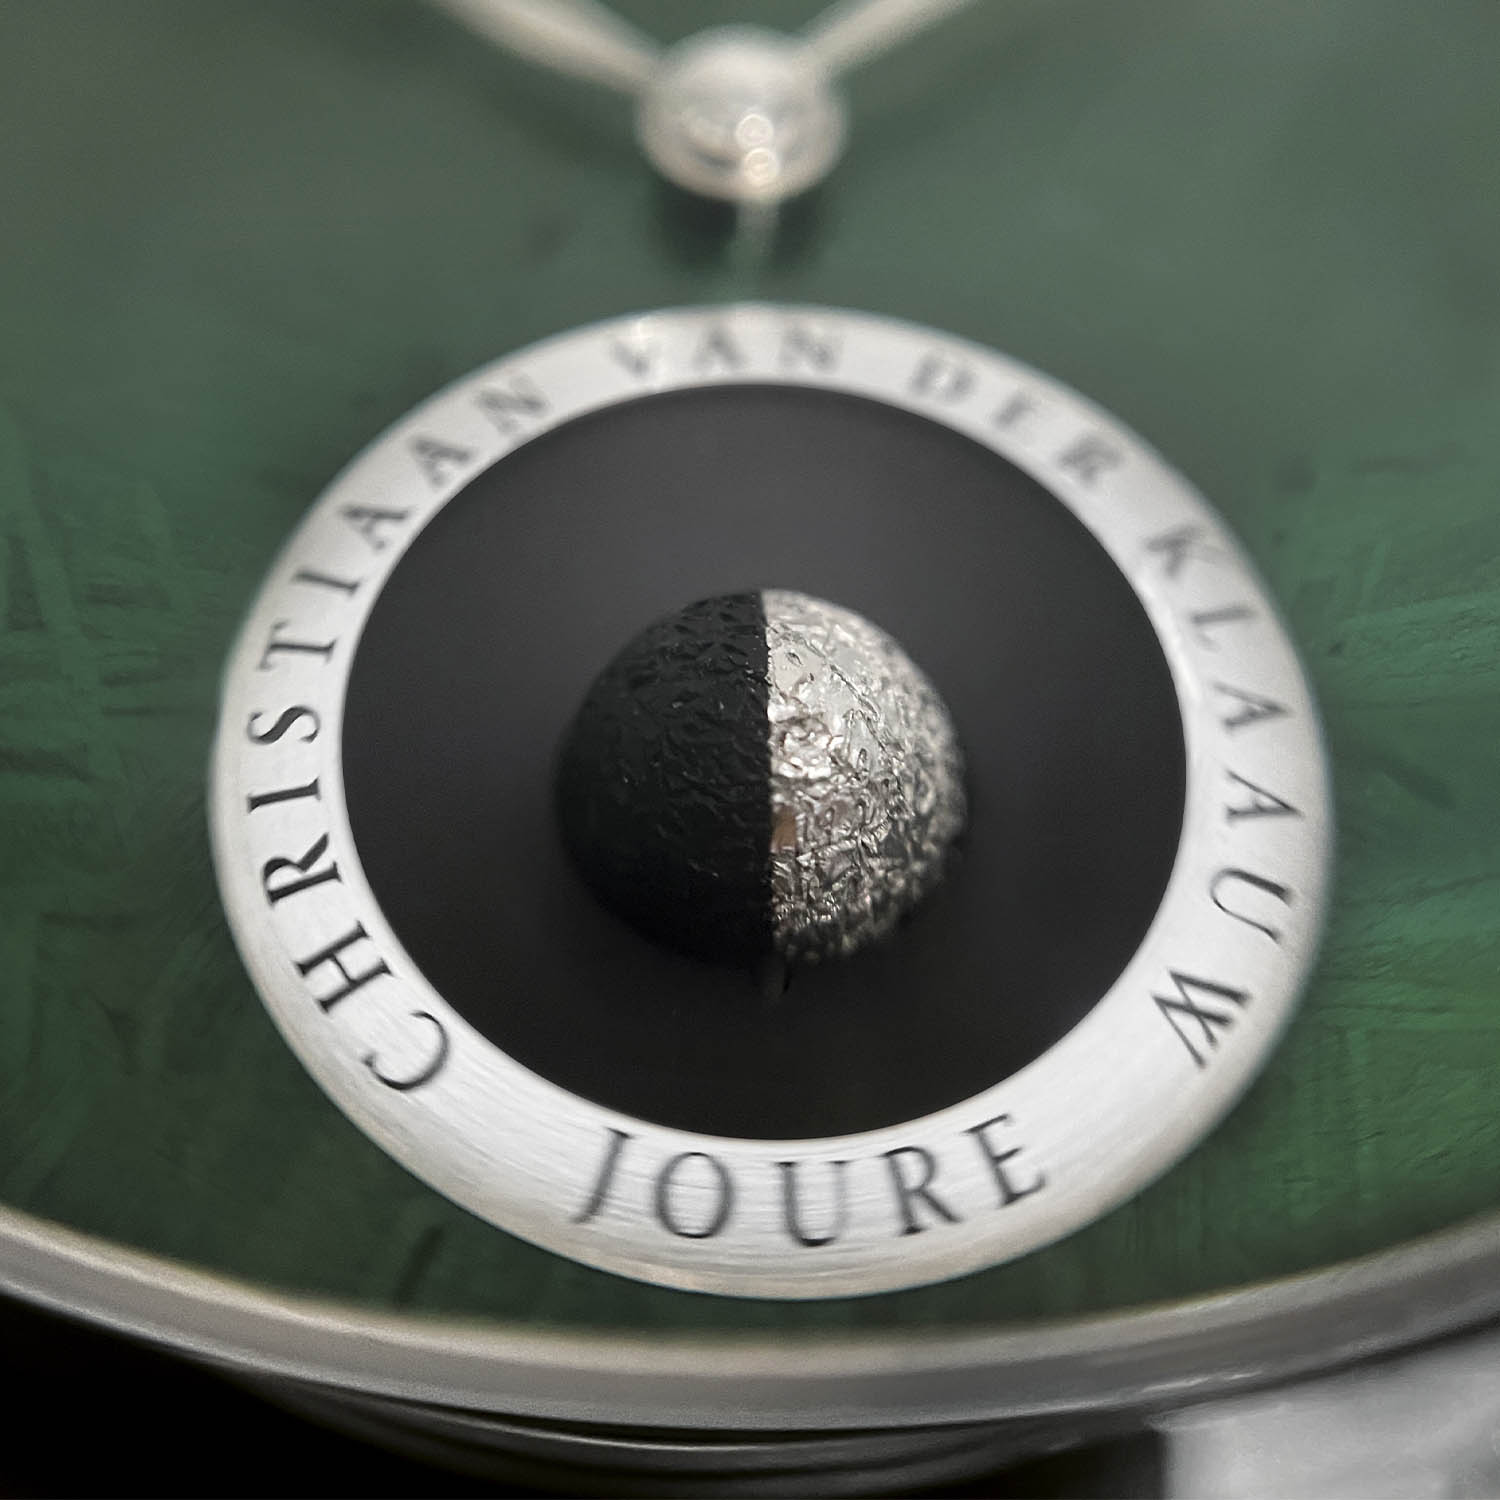 Christiaan van der Klaauw Cosmic Real Moon Joure Green Meteorite